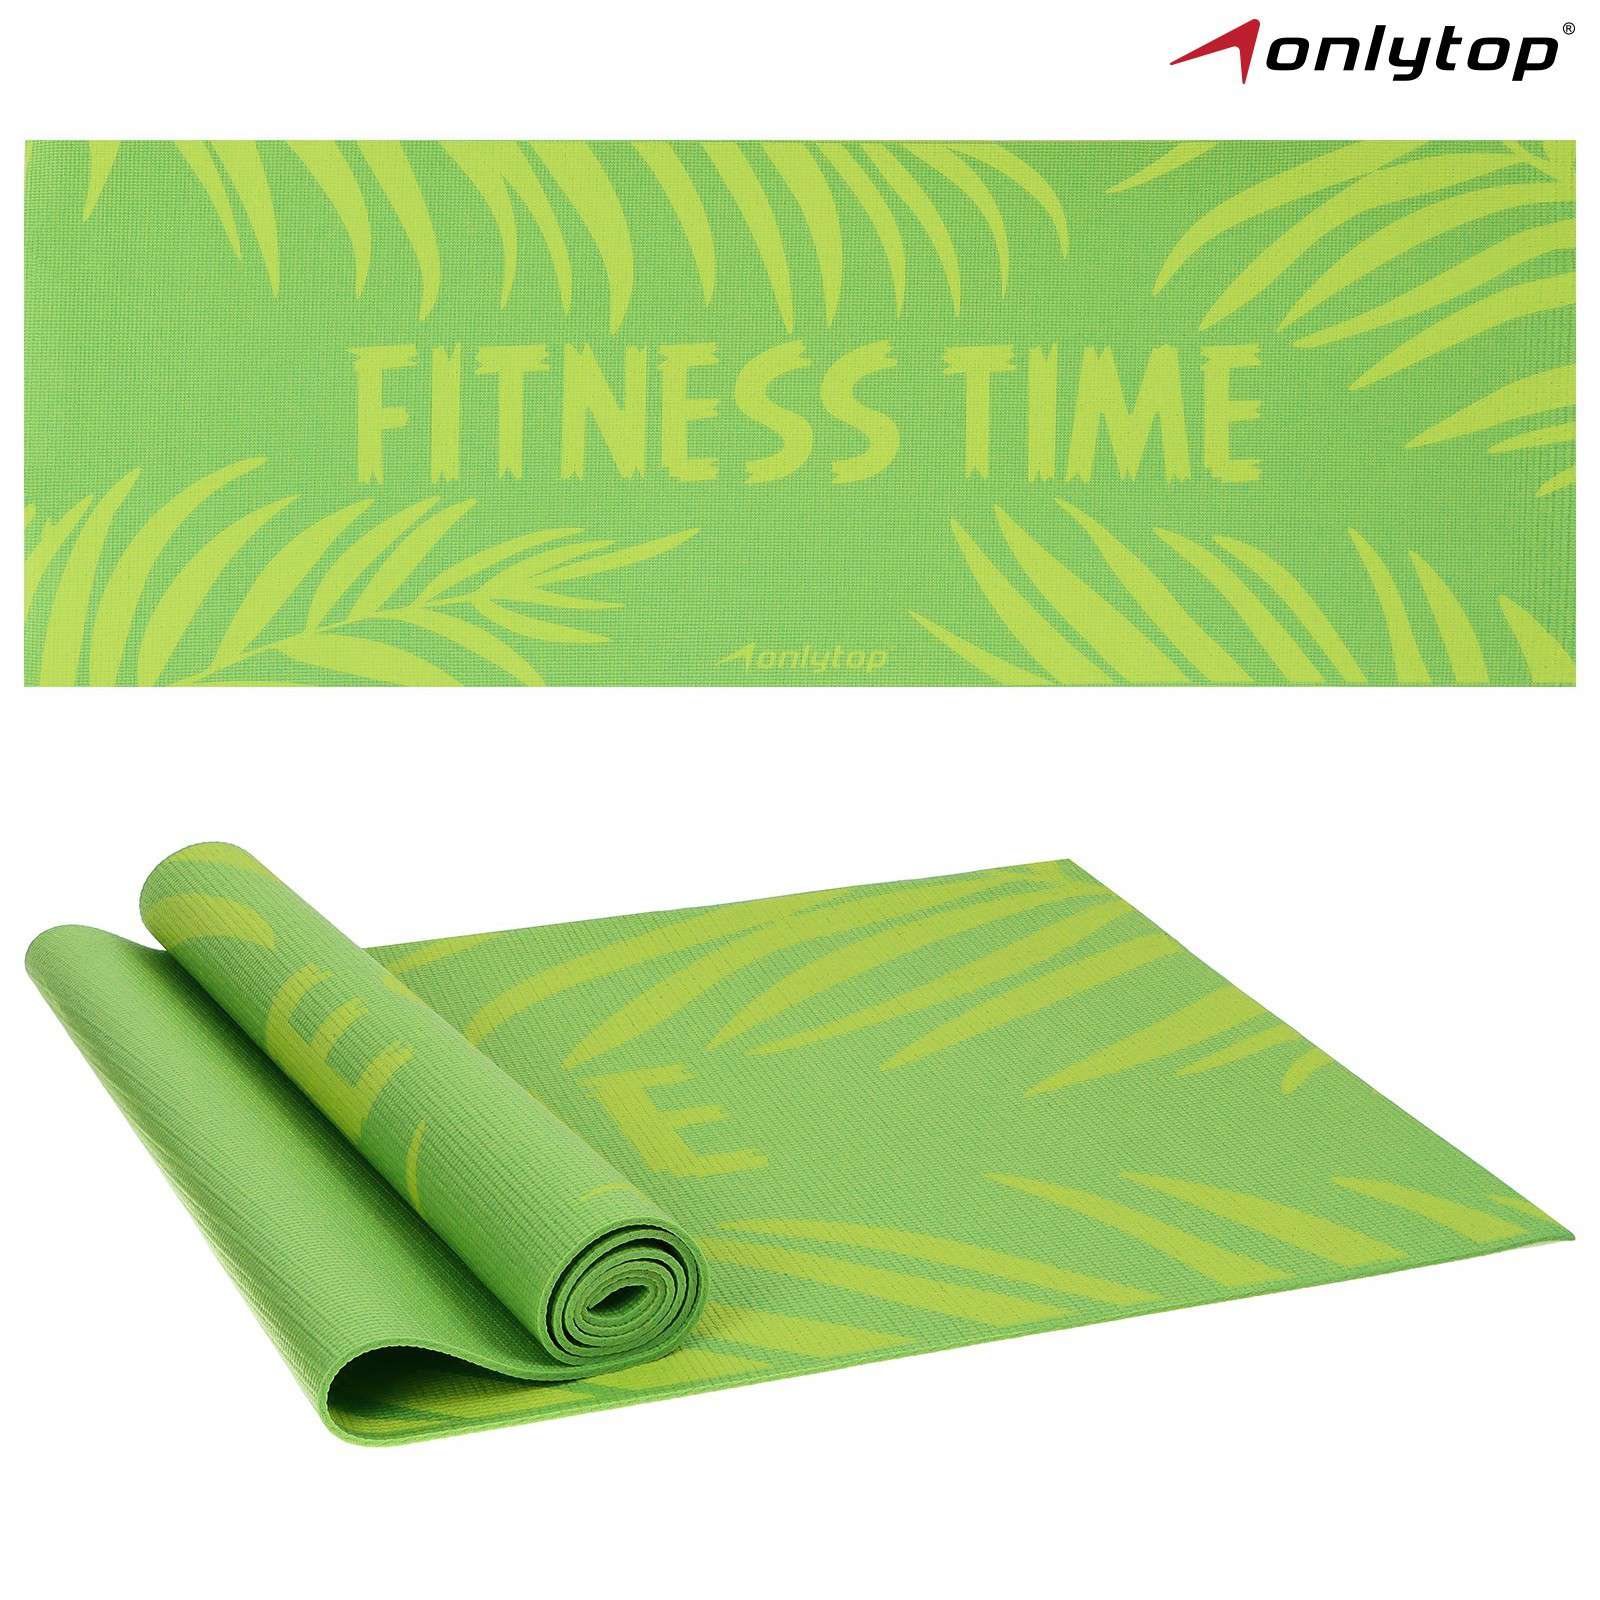 Коврик для фитнеса 7387391 Fitness time 173*61*0,4см цвет зелёный